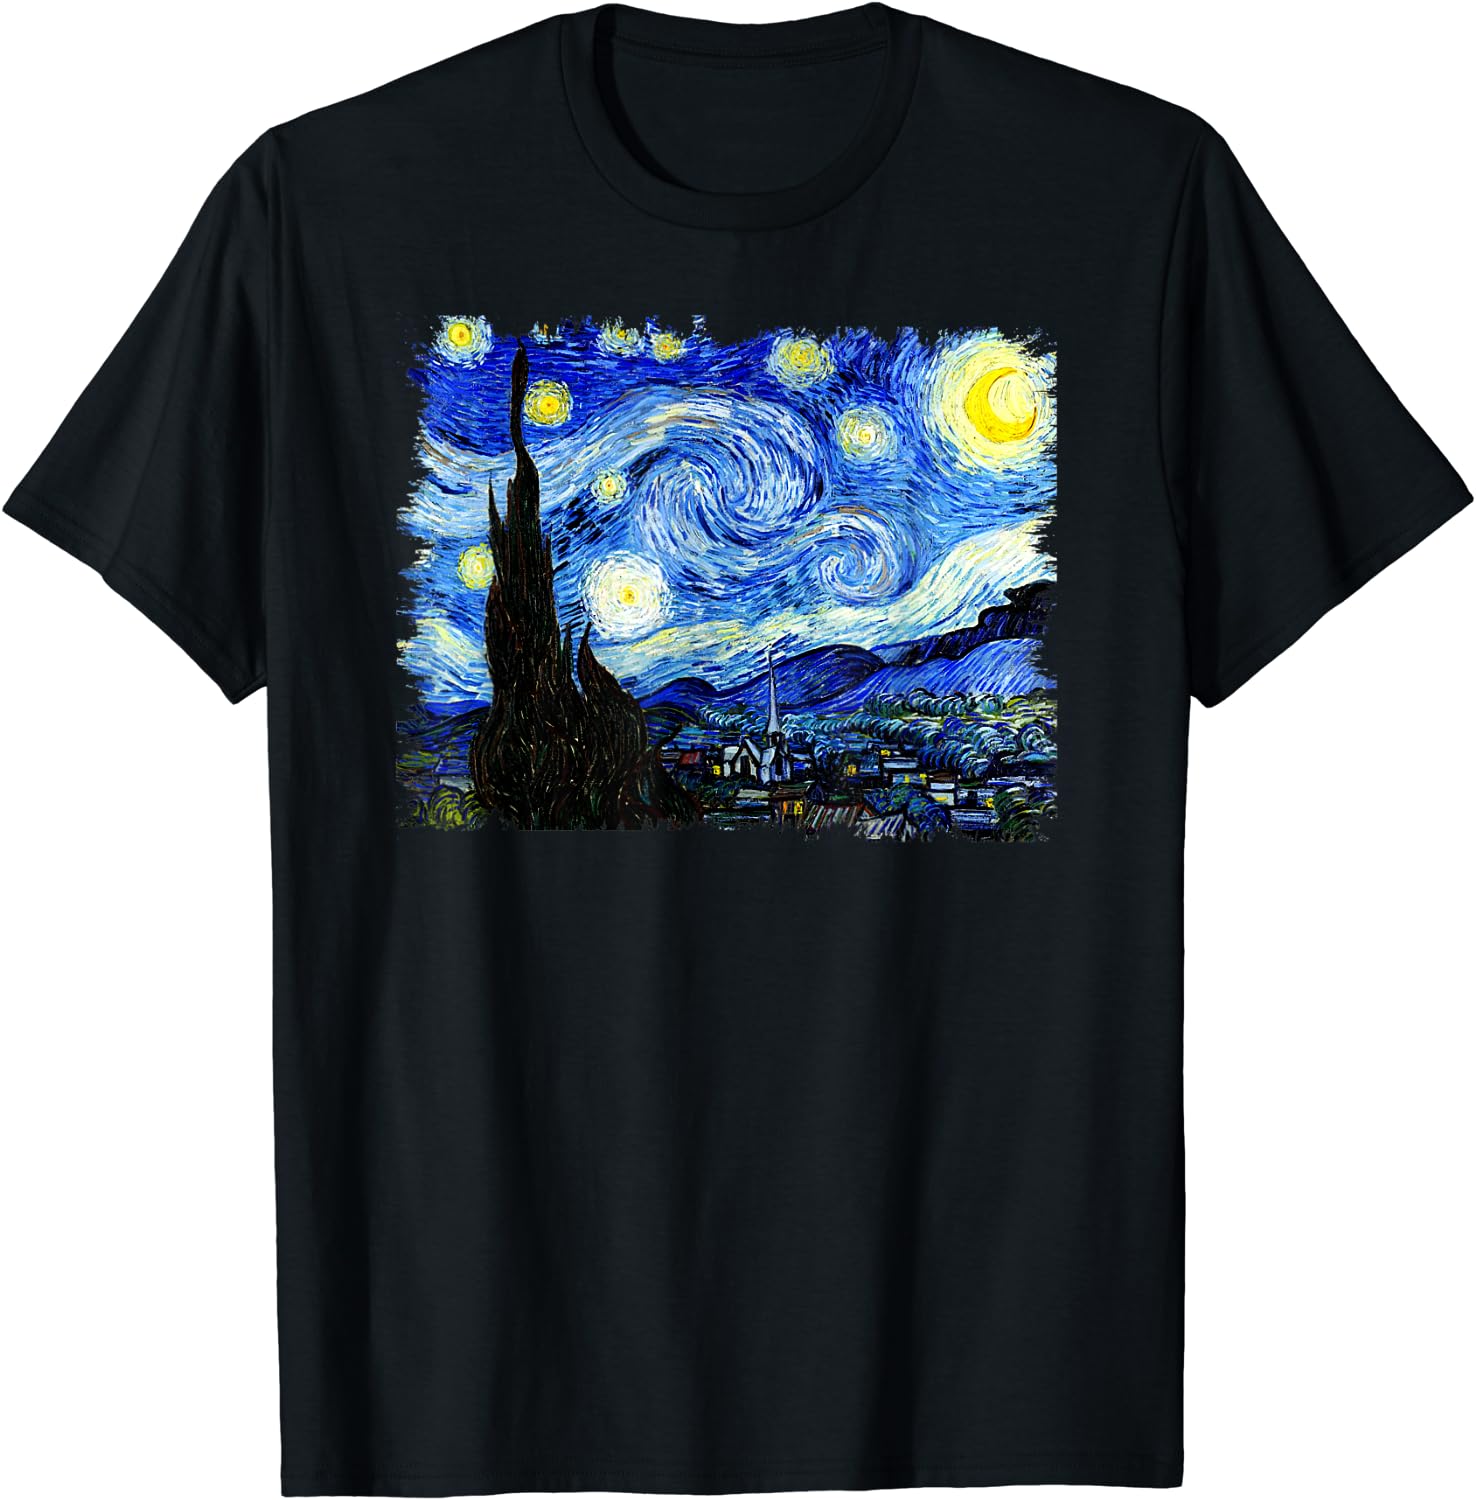 Discover Maglietta T-Shirt Vincent Van Gogh Uomo Donna Bambini Notte Stellata Famosi Classici Arte Elegante